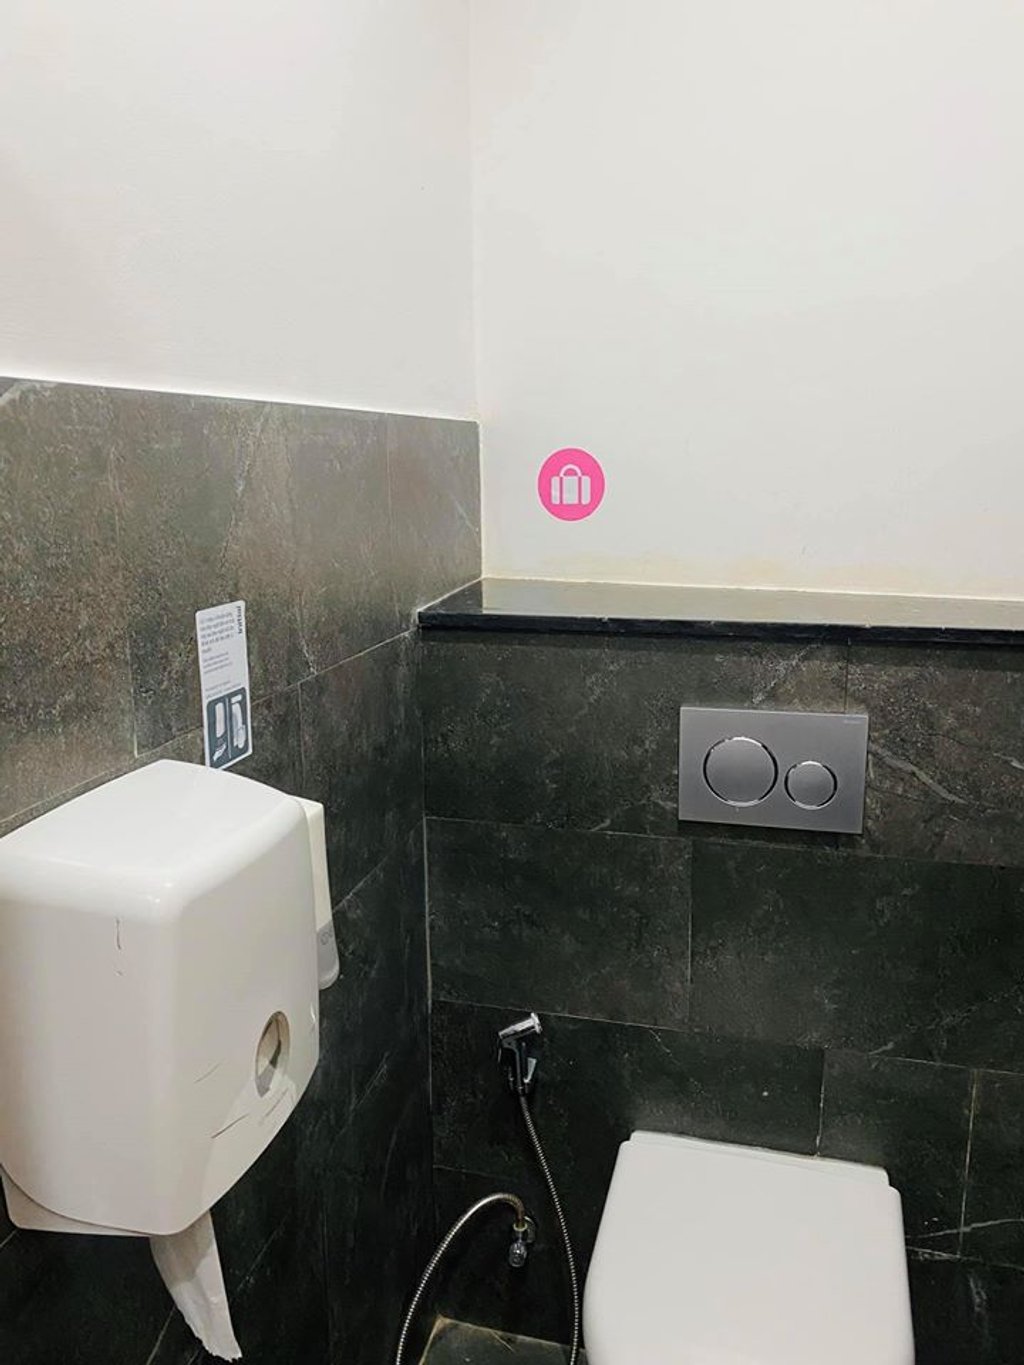 Nhà vệ sinh có điều hòa và rất nhiều thiết bị hiện đại.